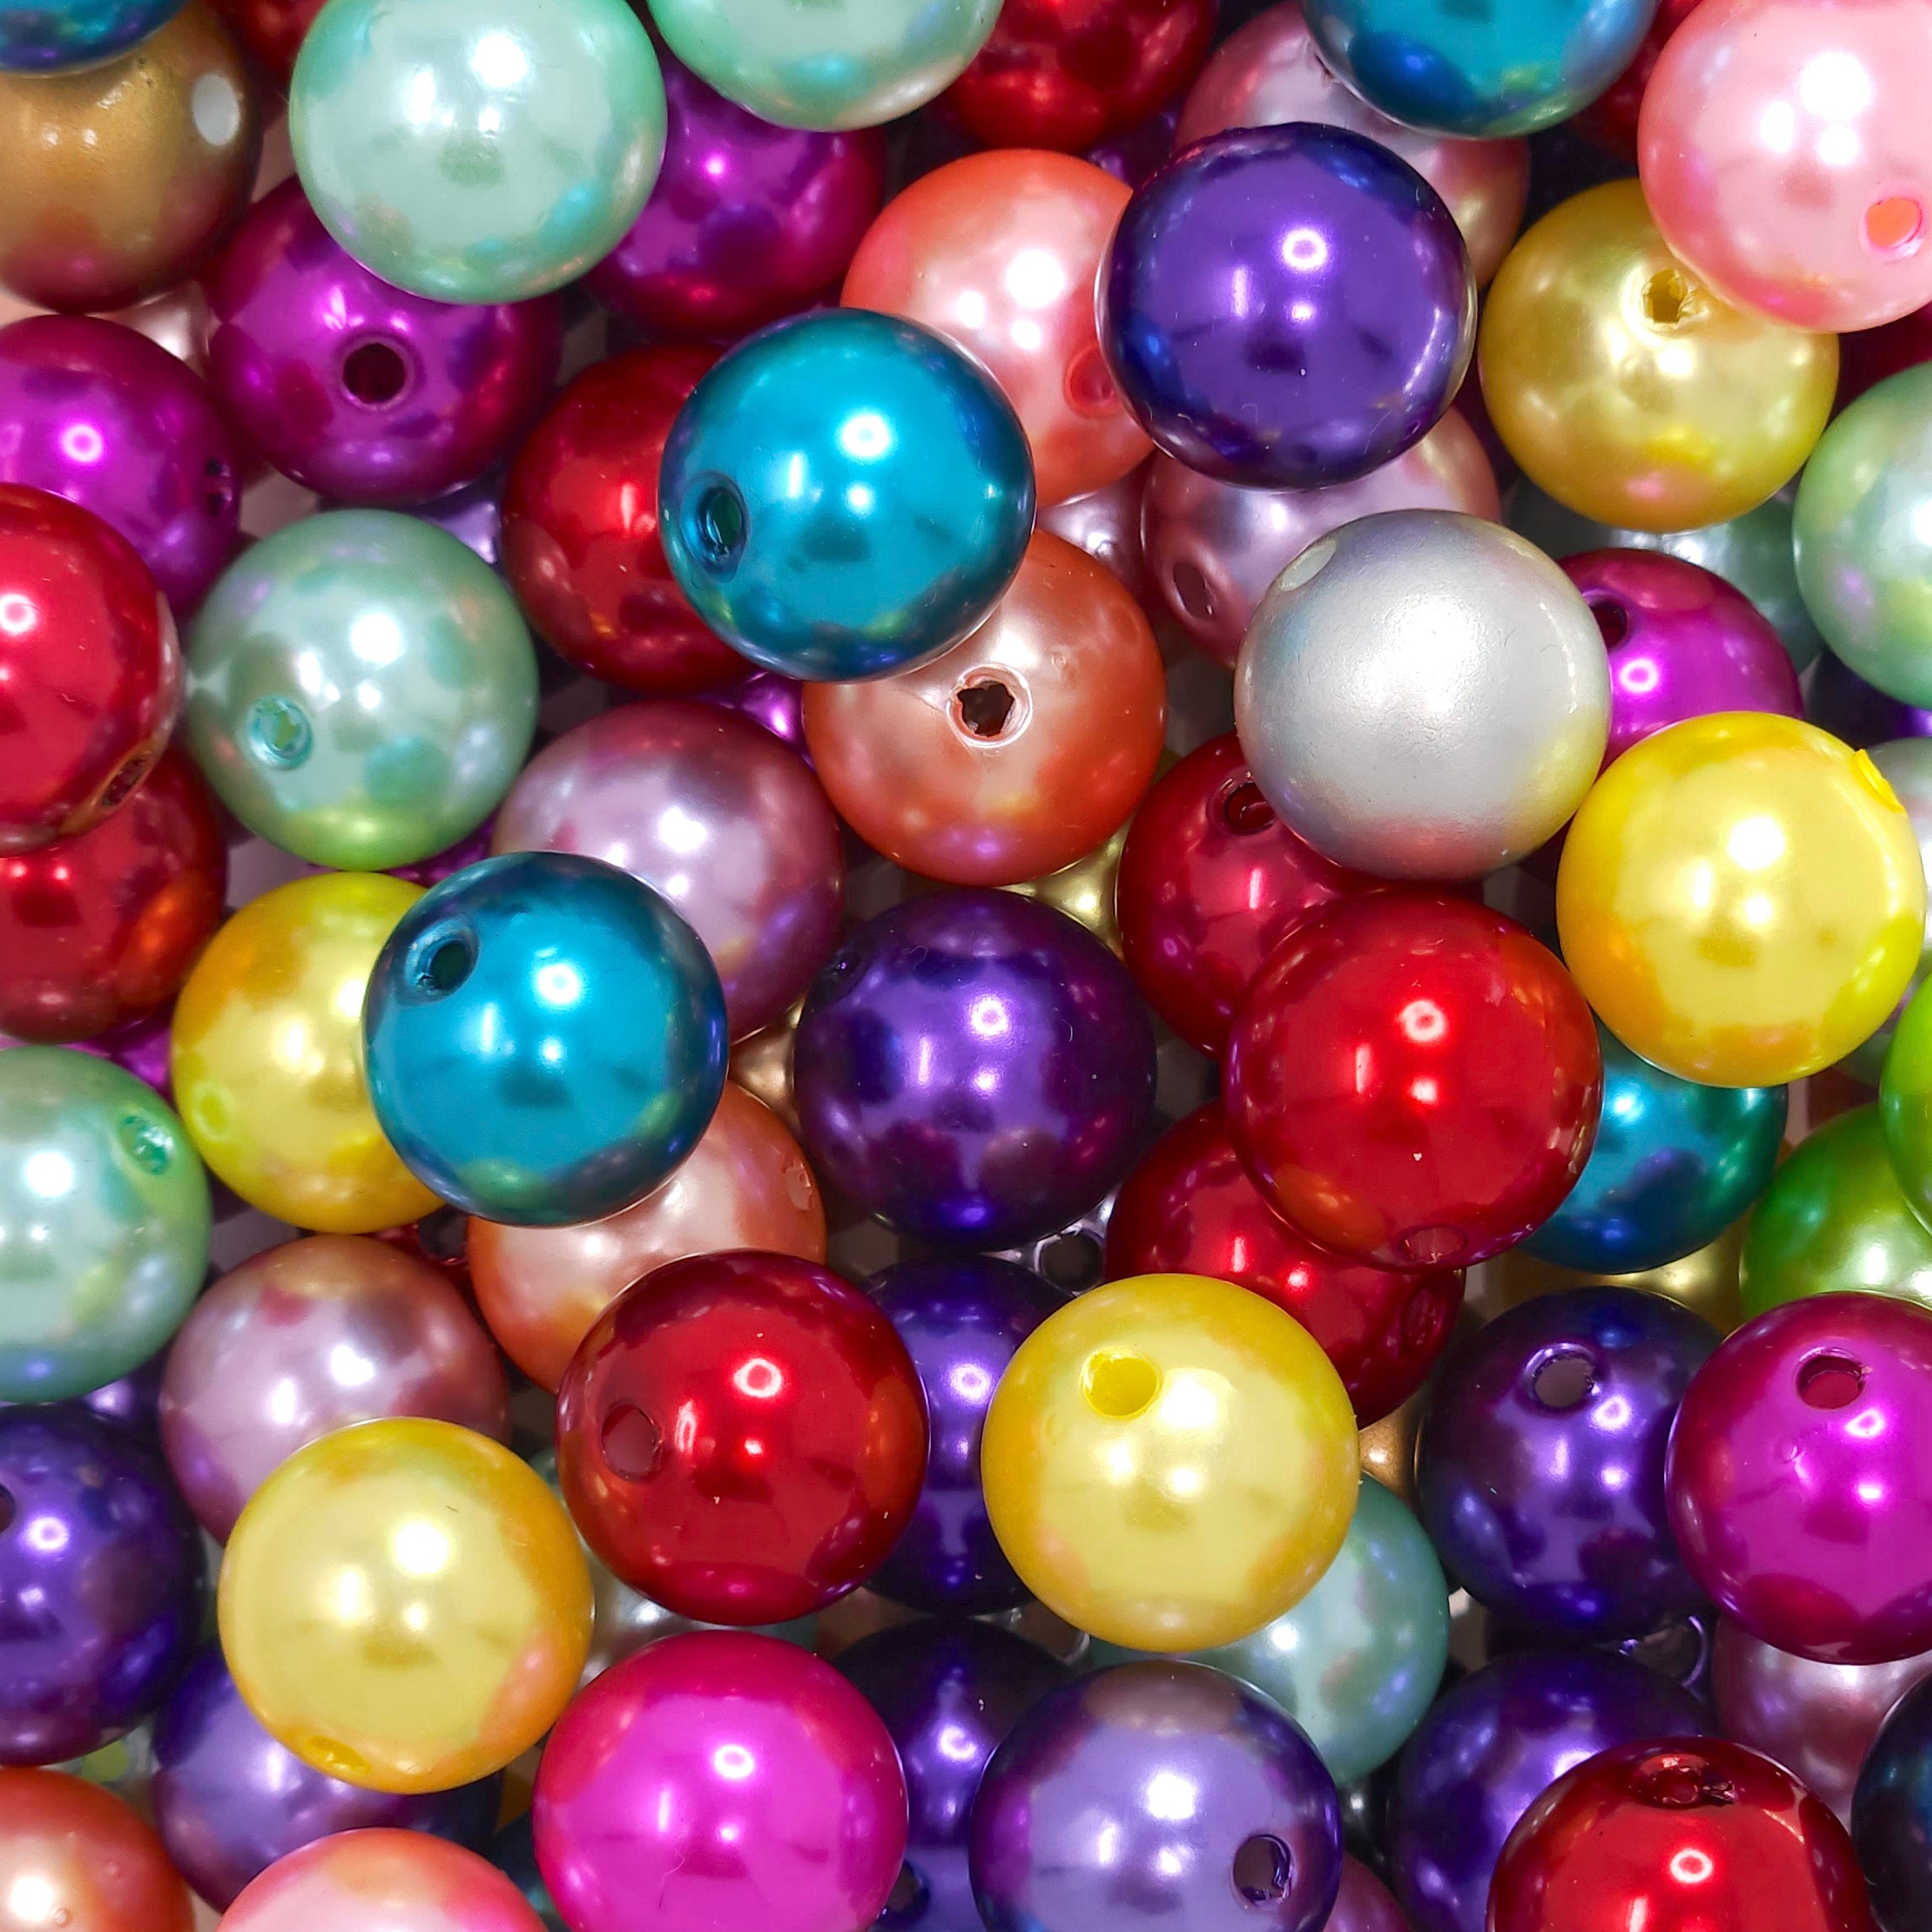 Acrylic Pearl Beads